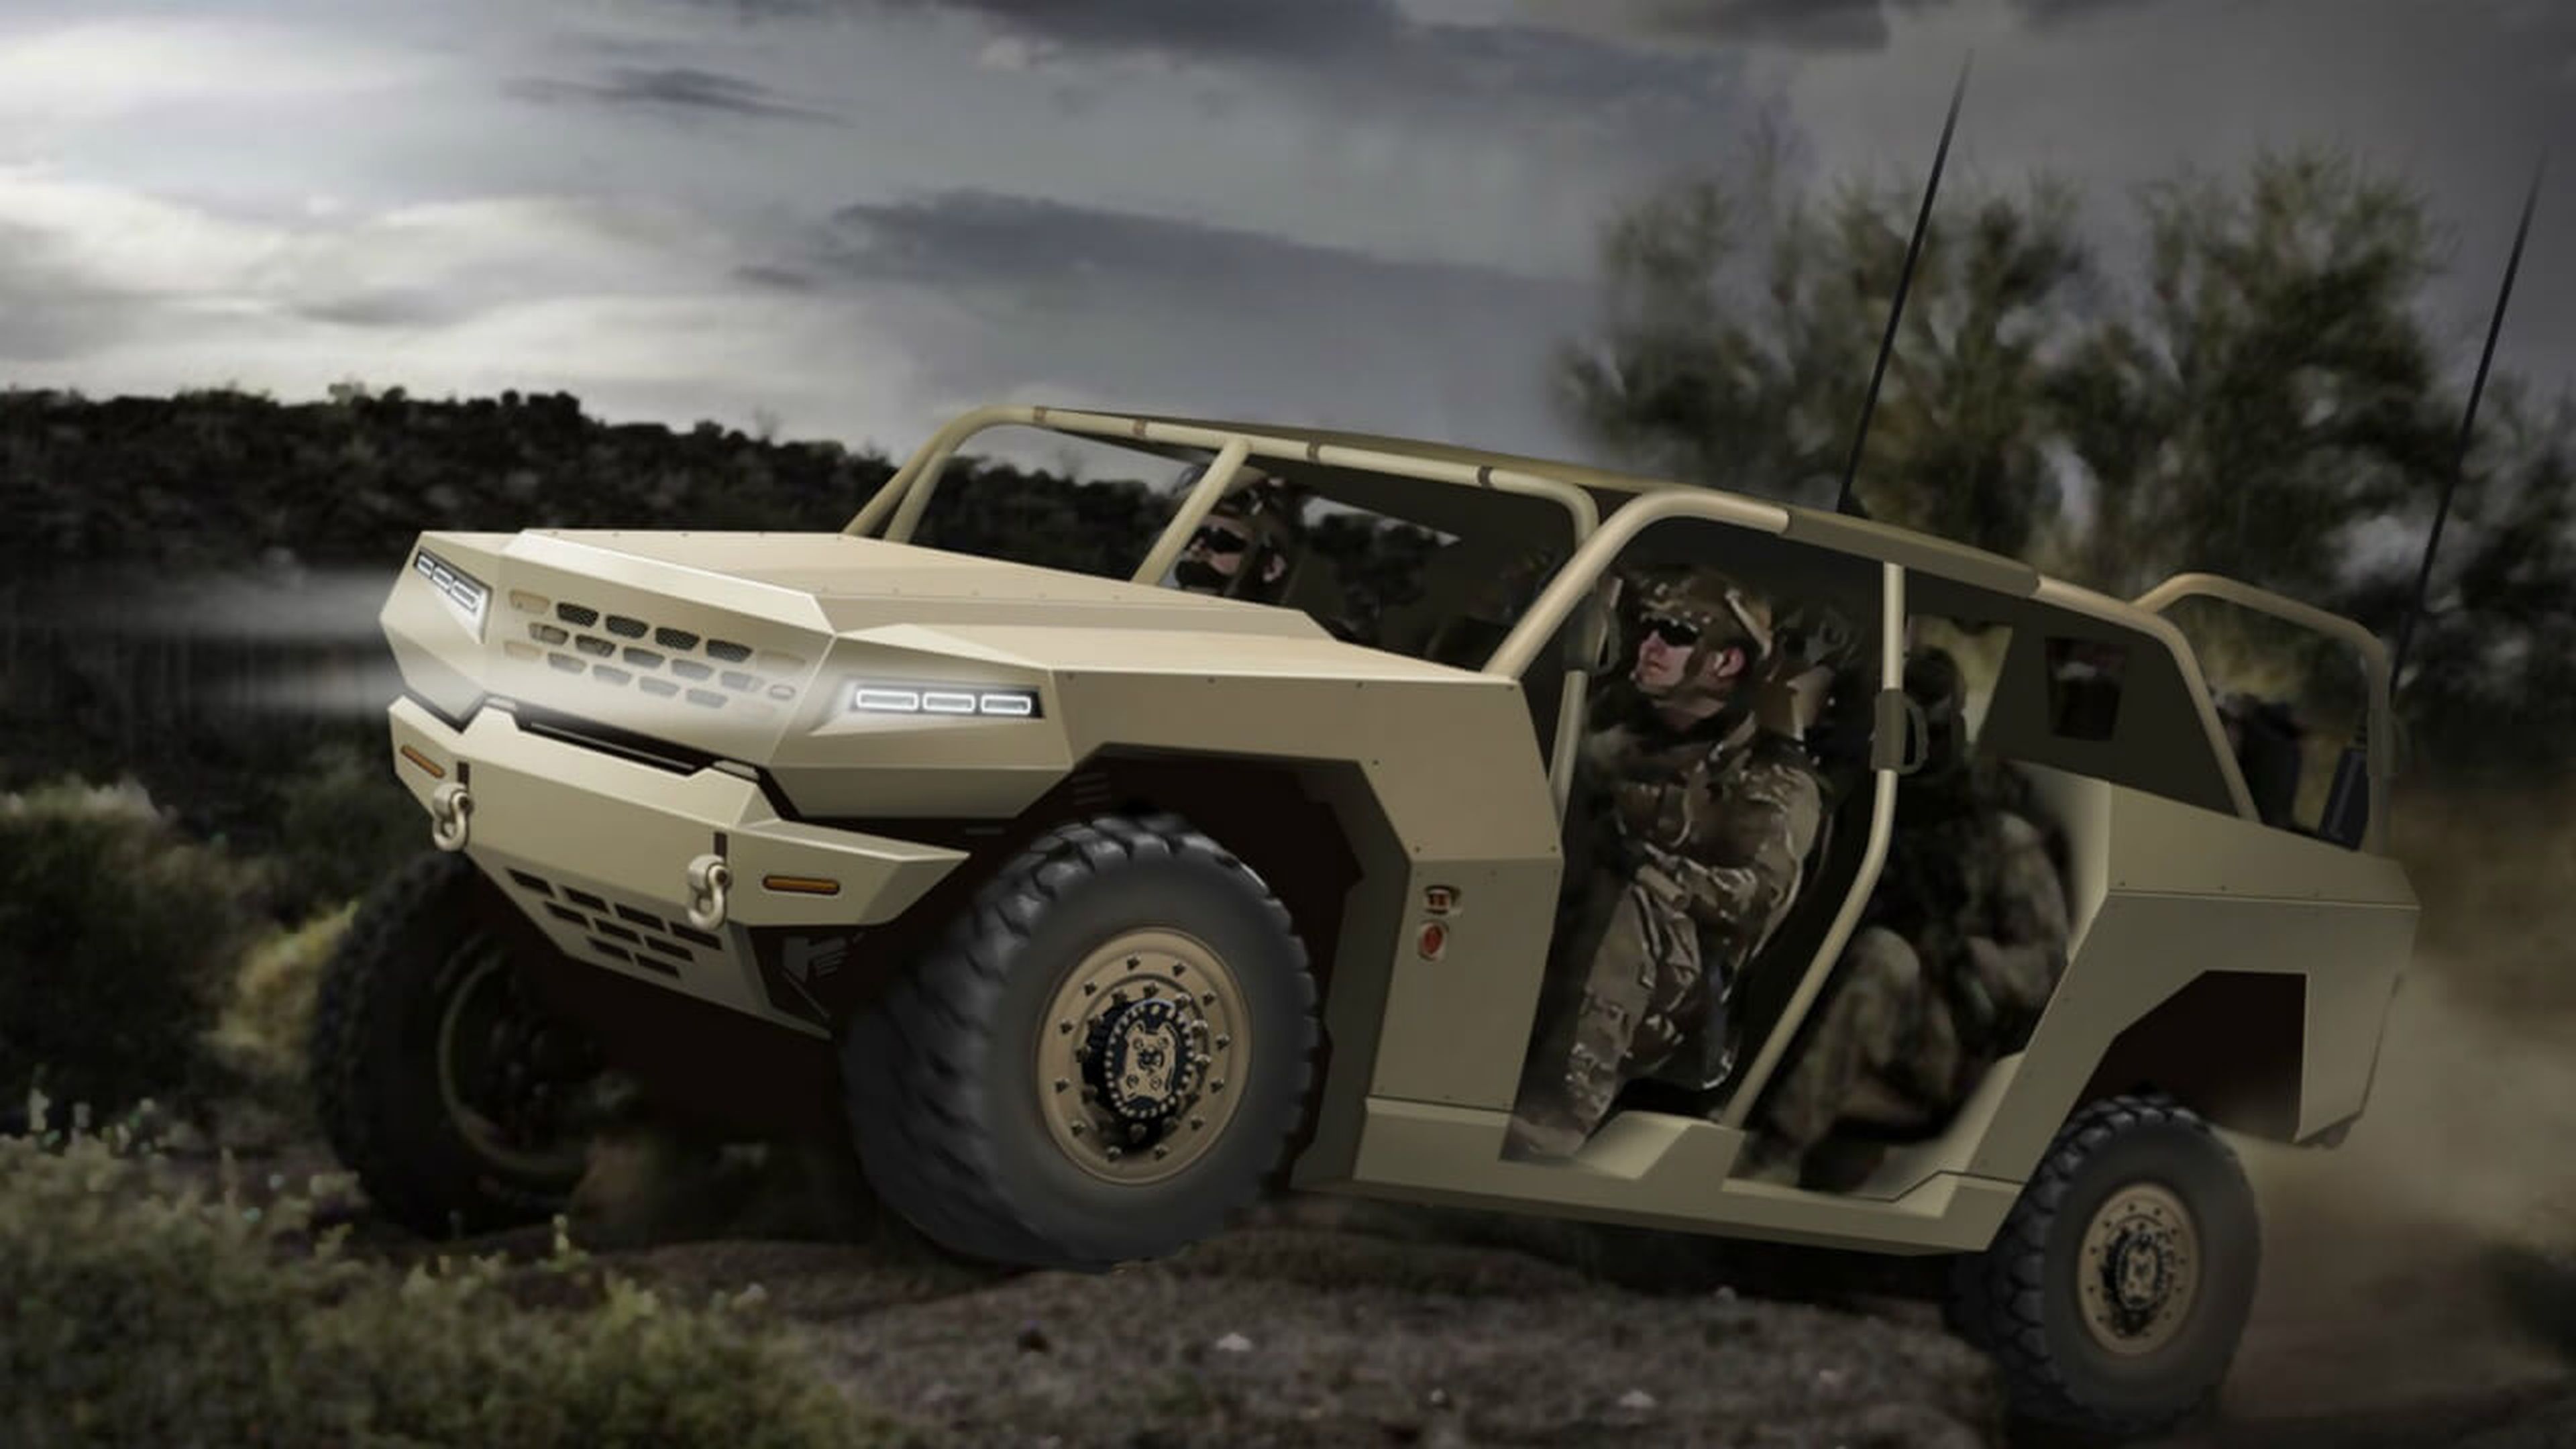 Kia fabrica vehículos militares y el próximo estará basado en el Mohave